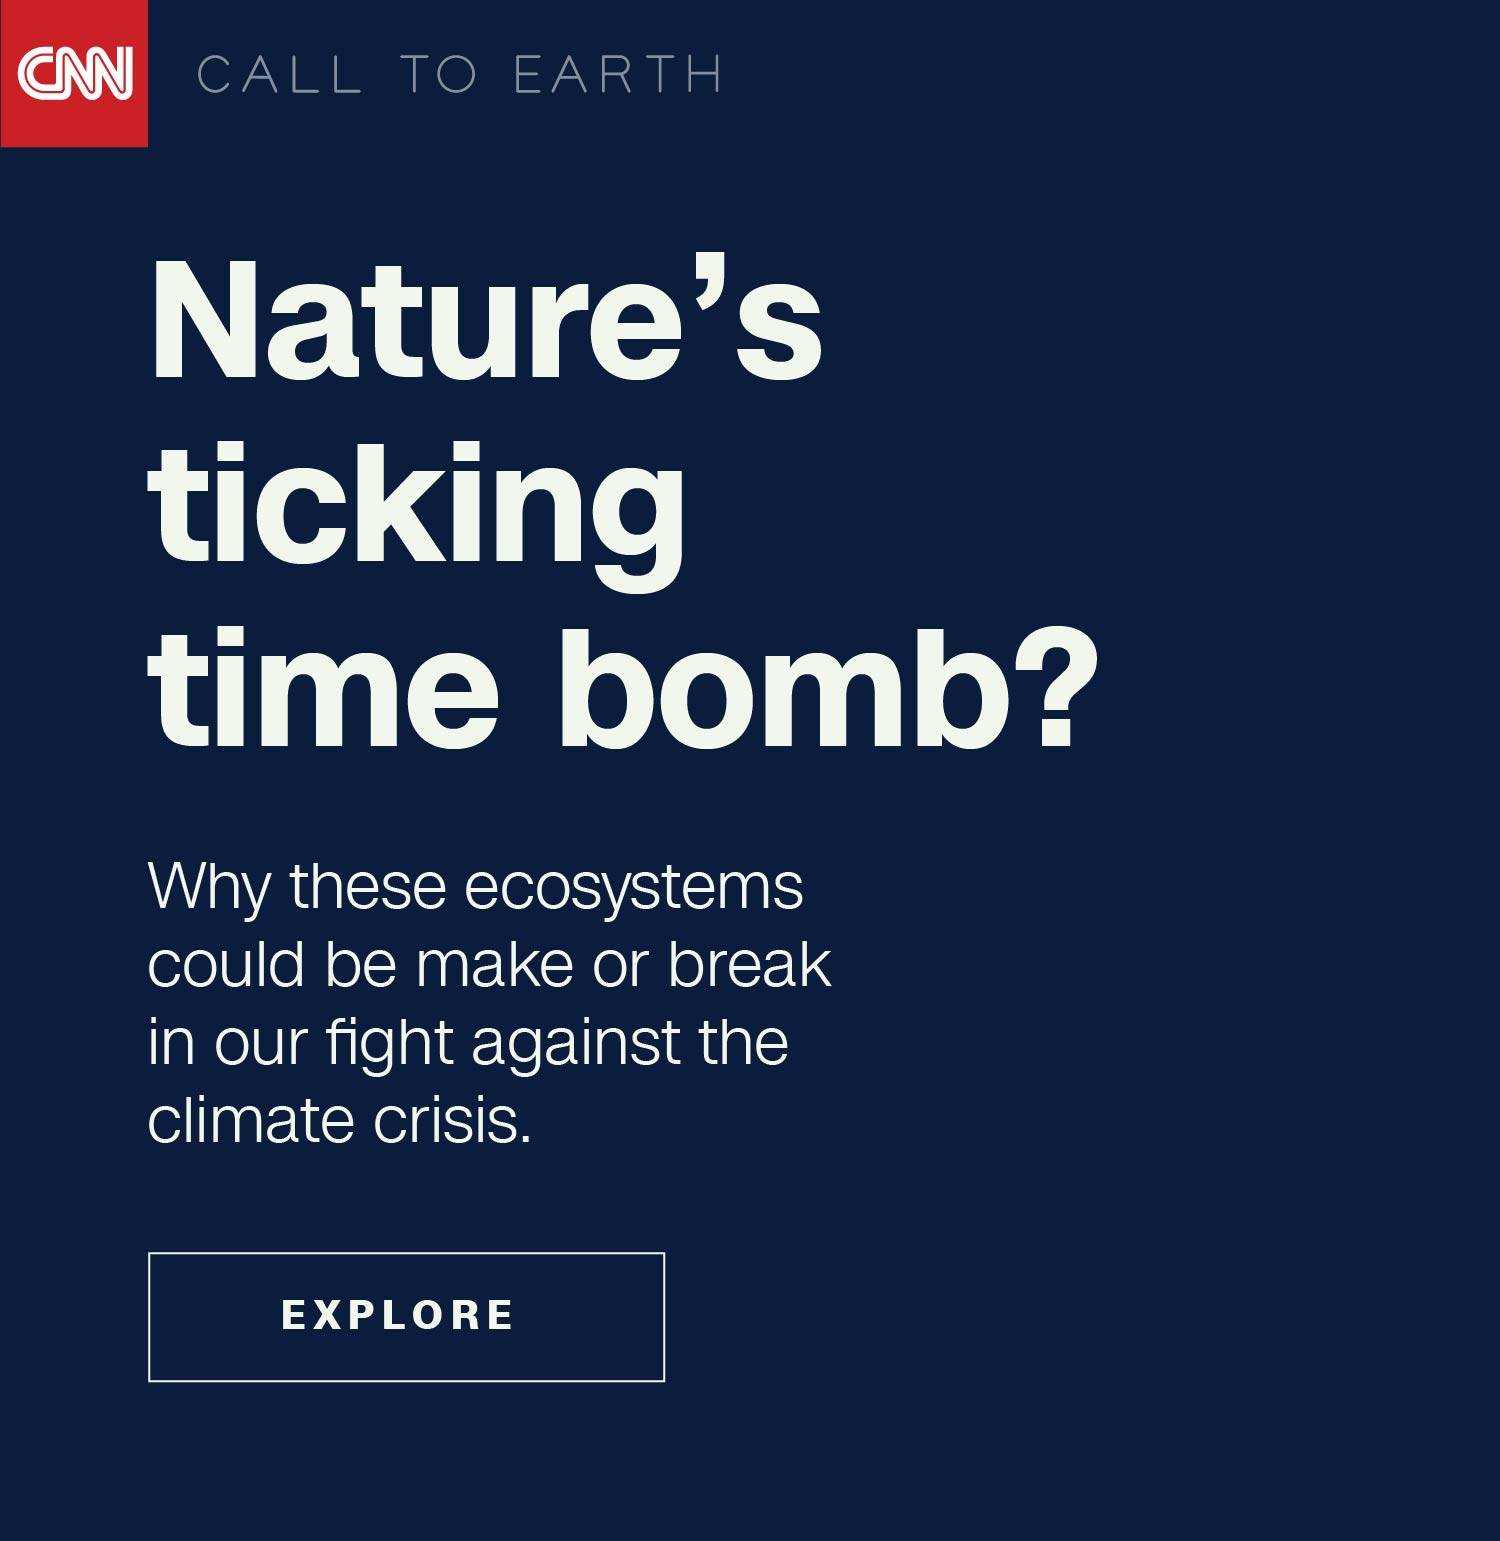 Die tickende Zeitbombe der Natur?